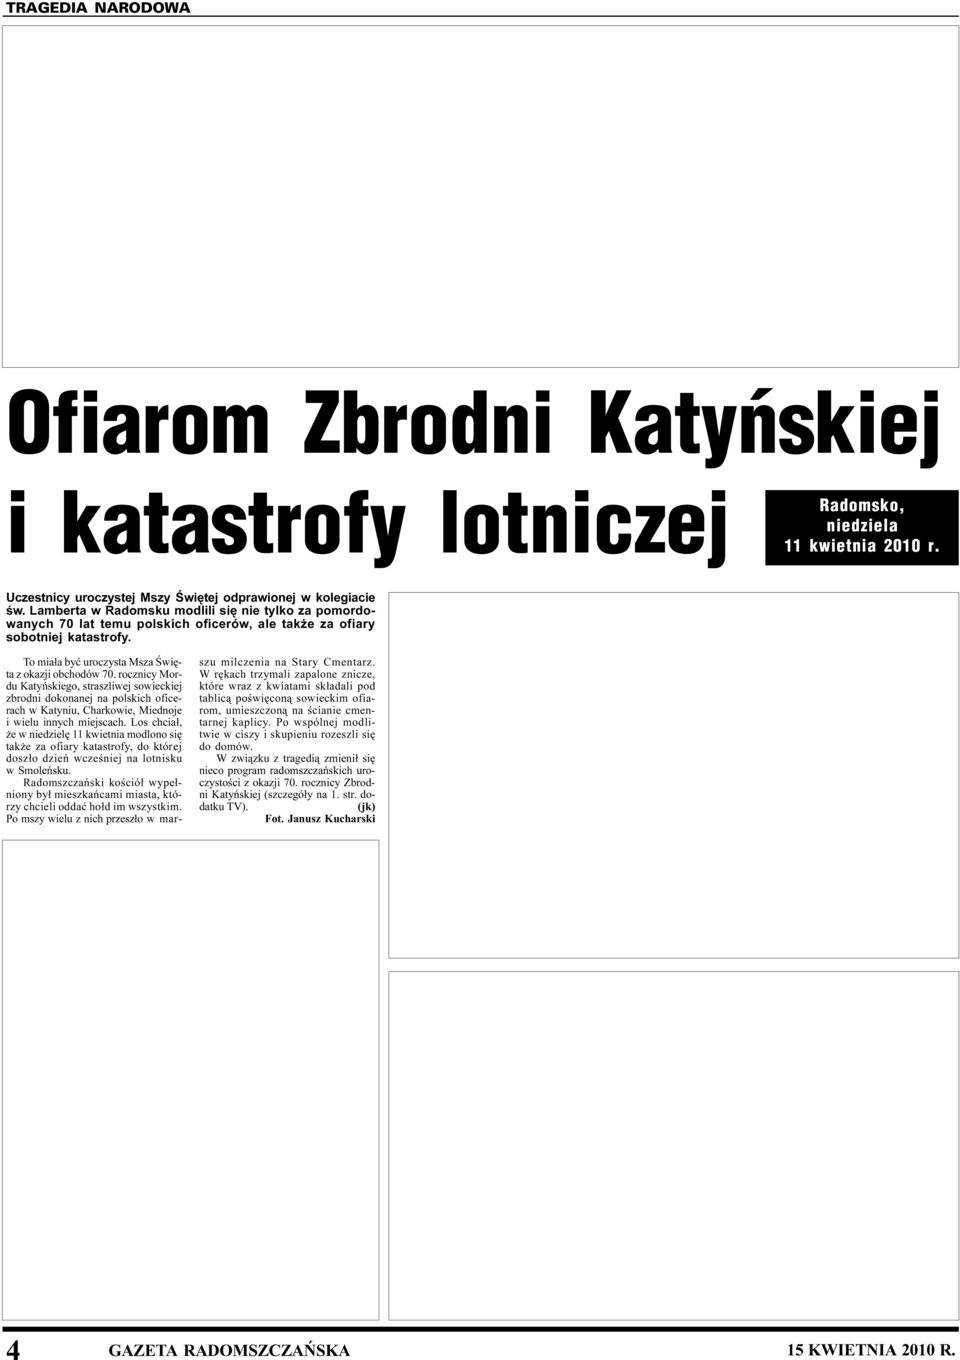 rocznicy Mordu Katyñskiego, straszliwej sowieckiej zbrodni dokonanej na polskich oficerach w Katyniu, Charkowie, Miednoje i wielu innych miejscach.